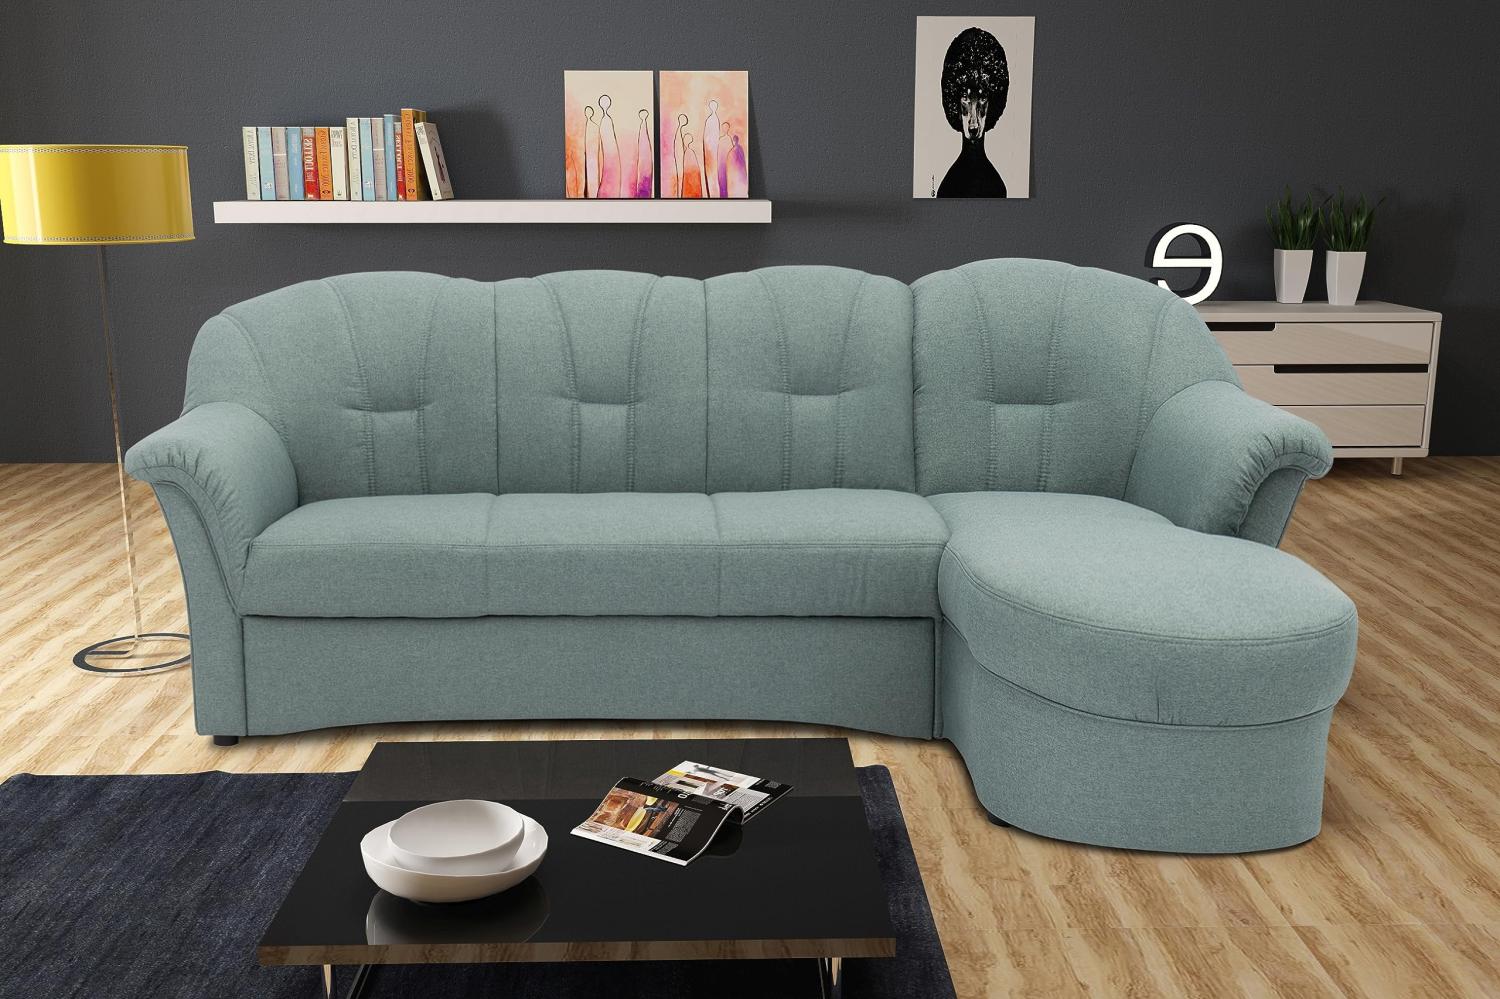 DOMO Collection Puno Ecksofa, Sofa in L-Form, Eckcouch, Sofa, Couch mit Longchair, 233 x 142 cm, Polstermöbel in eisblau Bild 1